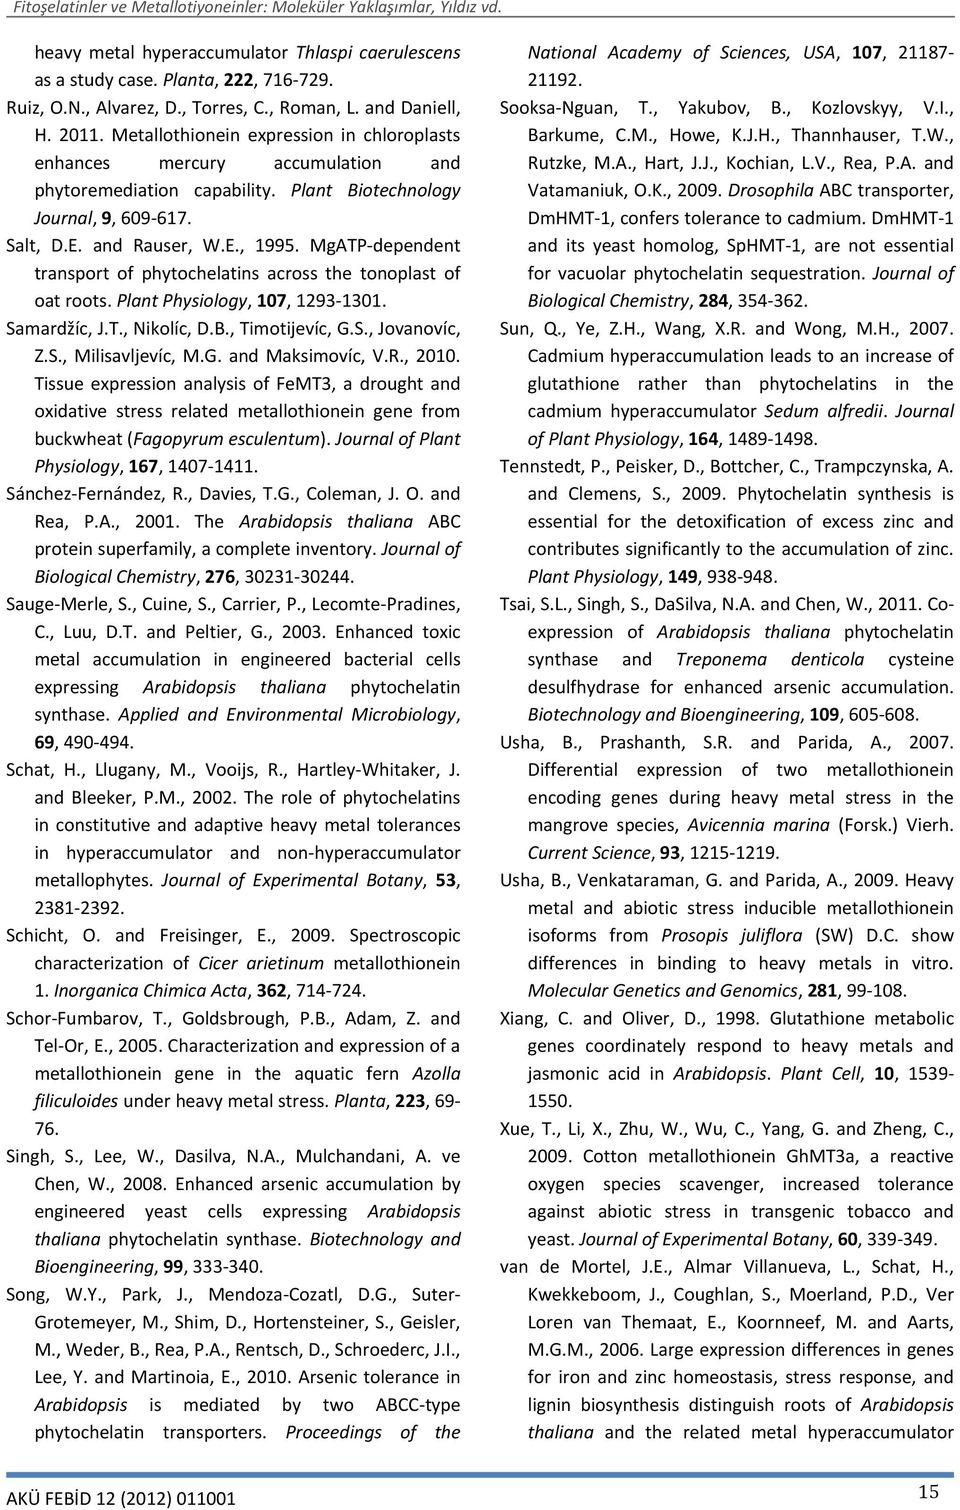 MgATP-dependent transport of phytochelatins across the tonoplast of oat roots. Plant Physiology, 107, 1293-1301. Samardžíc, J.T., Nikolíc, D.B., Timotijevíc, G.S., Jovanovíc, Z.S., Milisavljevíc, M.G. and Maksimovíc, V.